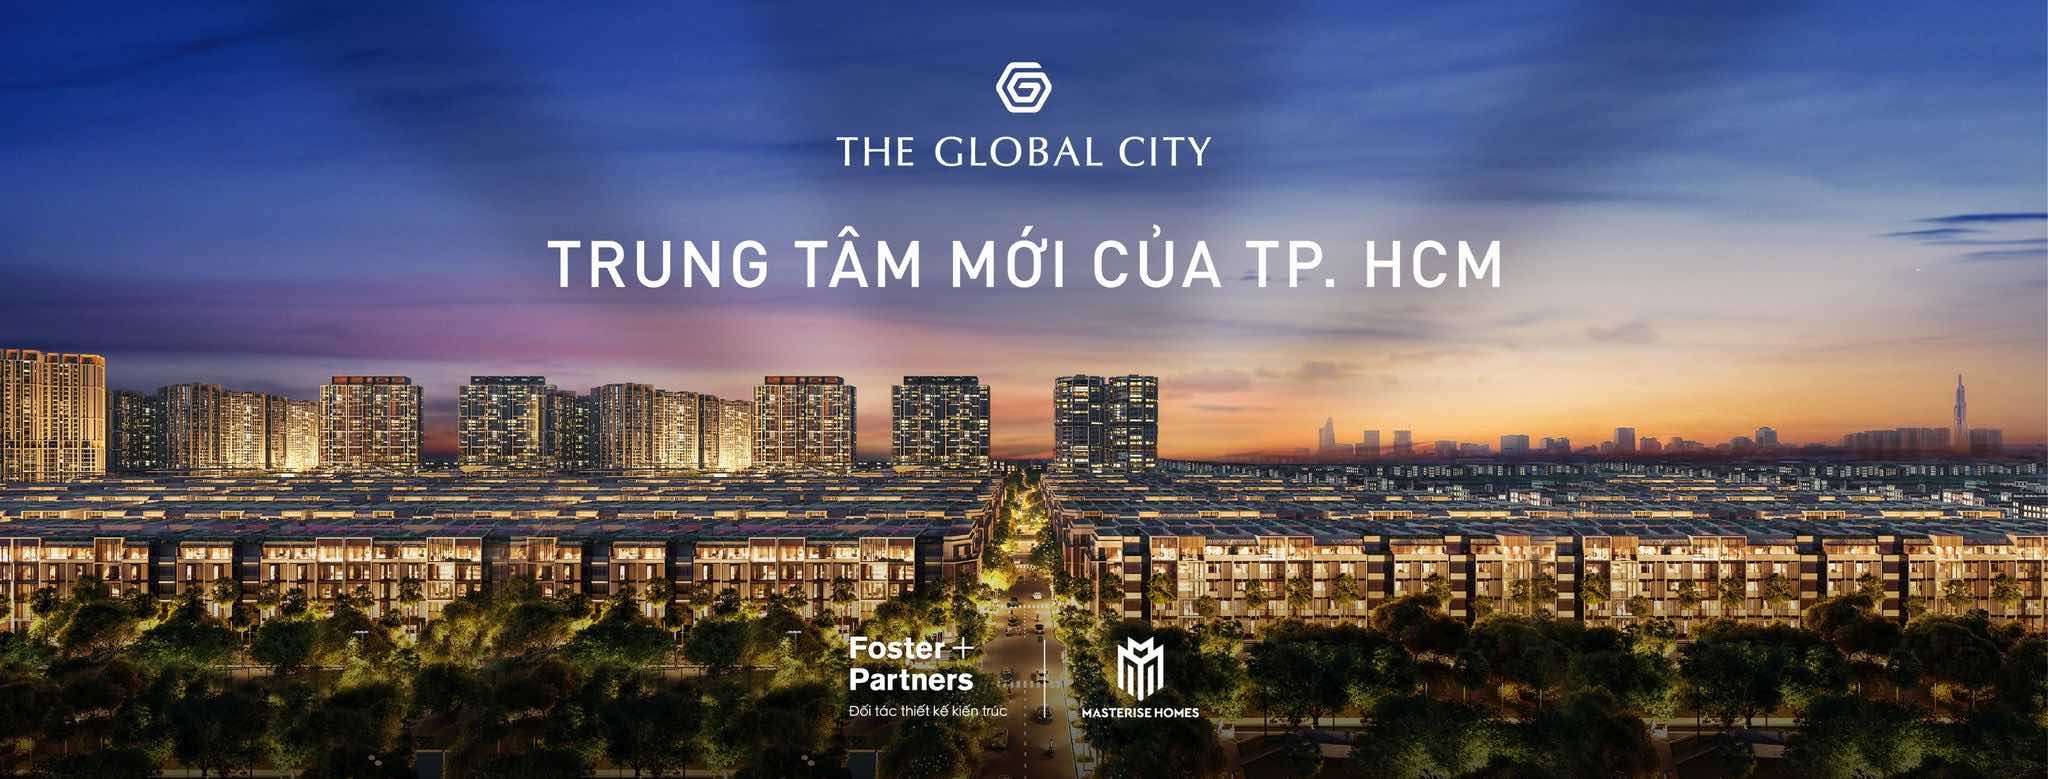 Dự án The Global City Quận 2 là khu đô thị biểu tượng mới sôi động được phát triển bởi chủ đầu tư Masterise Homes